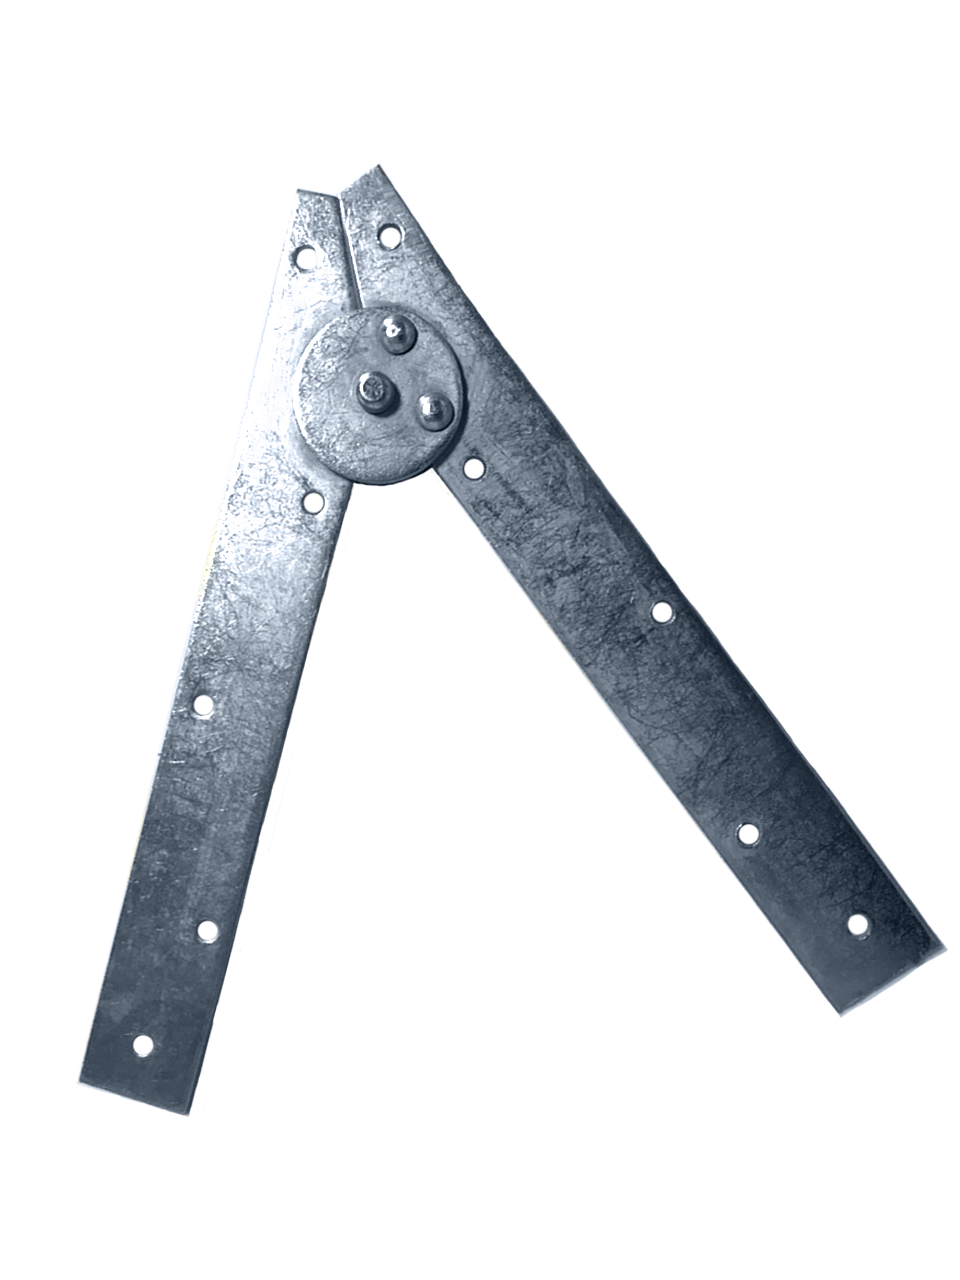 Scissors for ladders